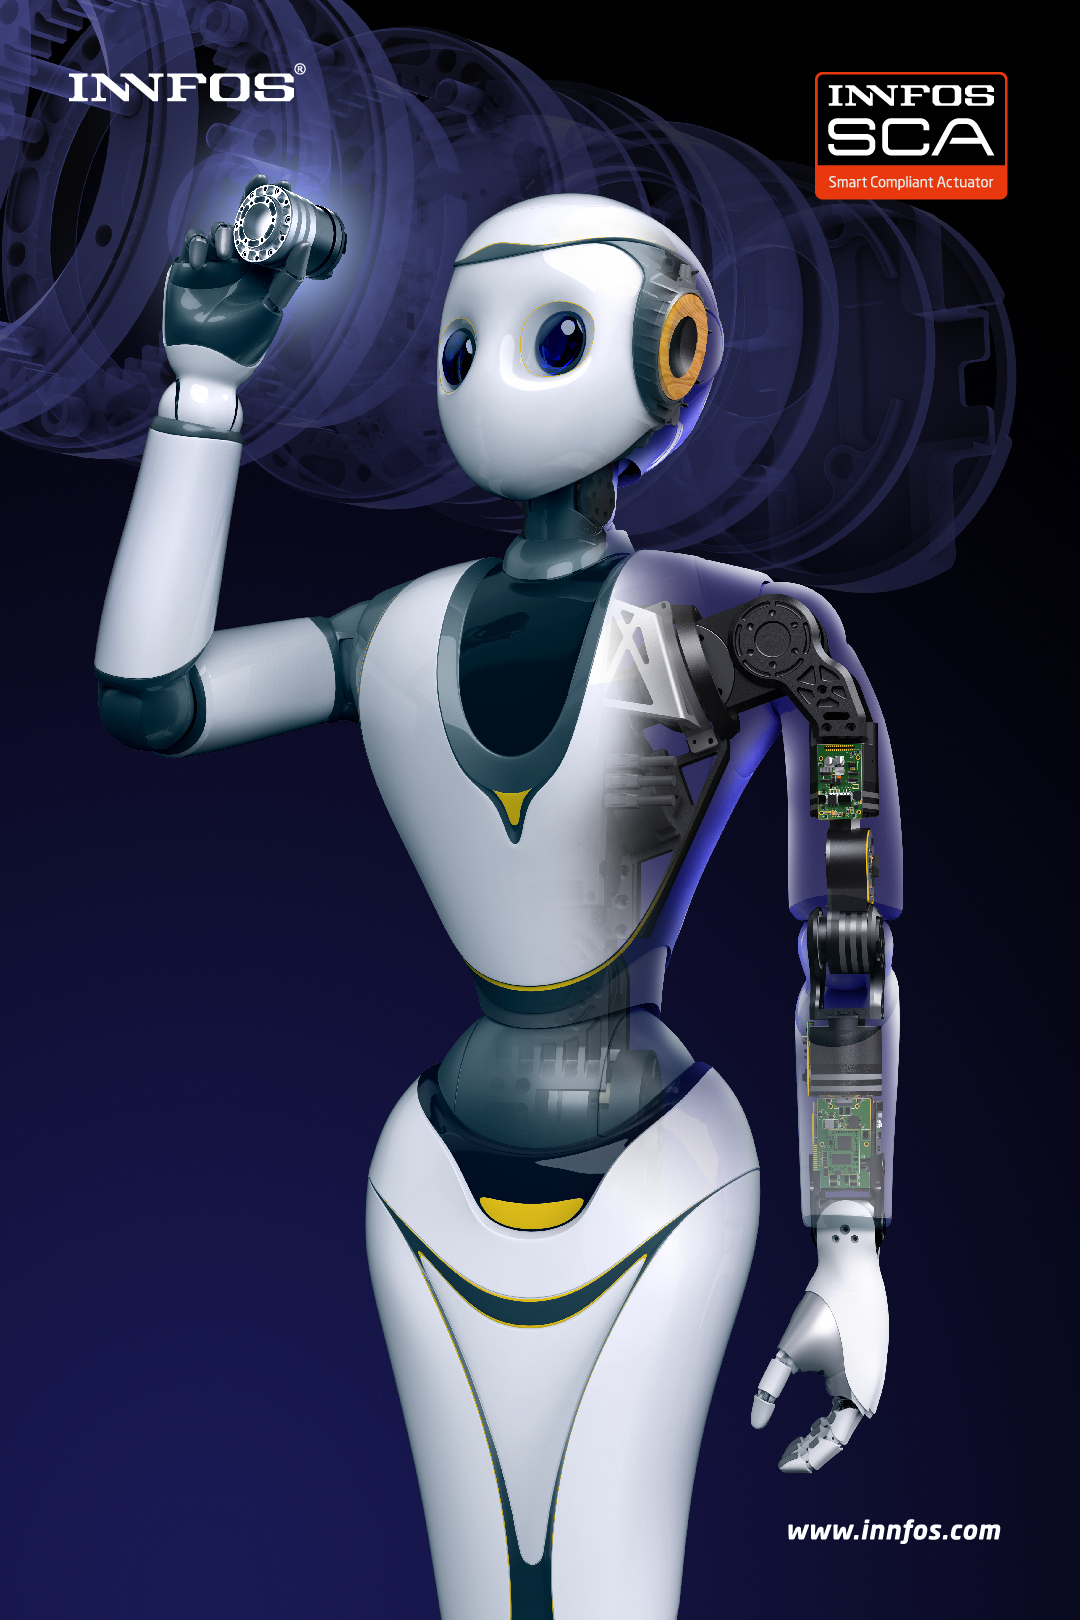 إنفوس تكشف عن الروبوت الذكيّ إكس آر 1 خلال المؤتمر العالمي للجوّال